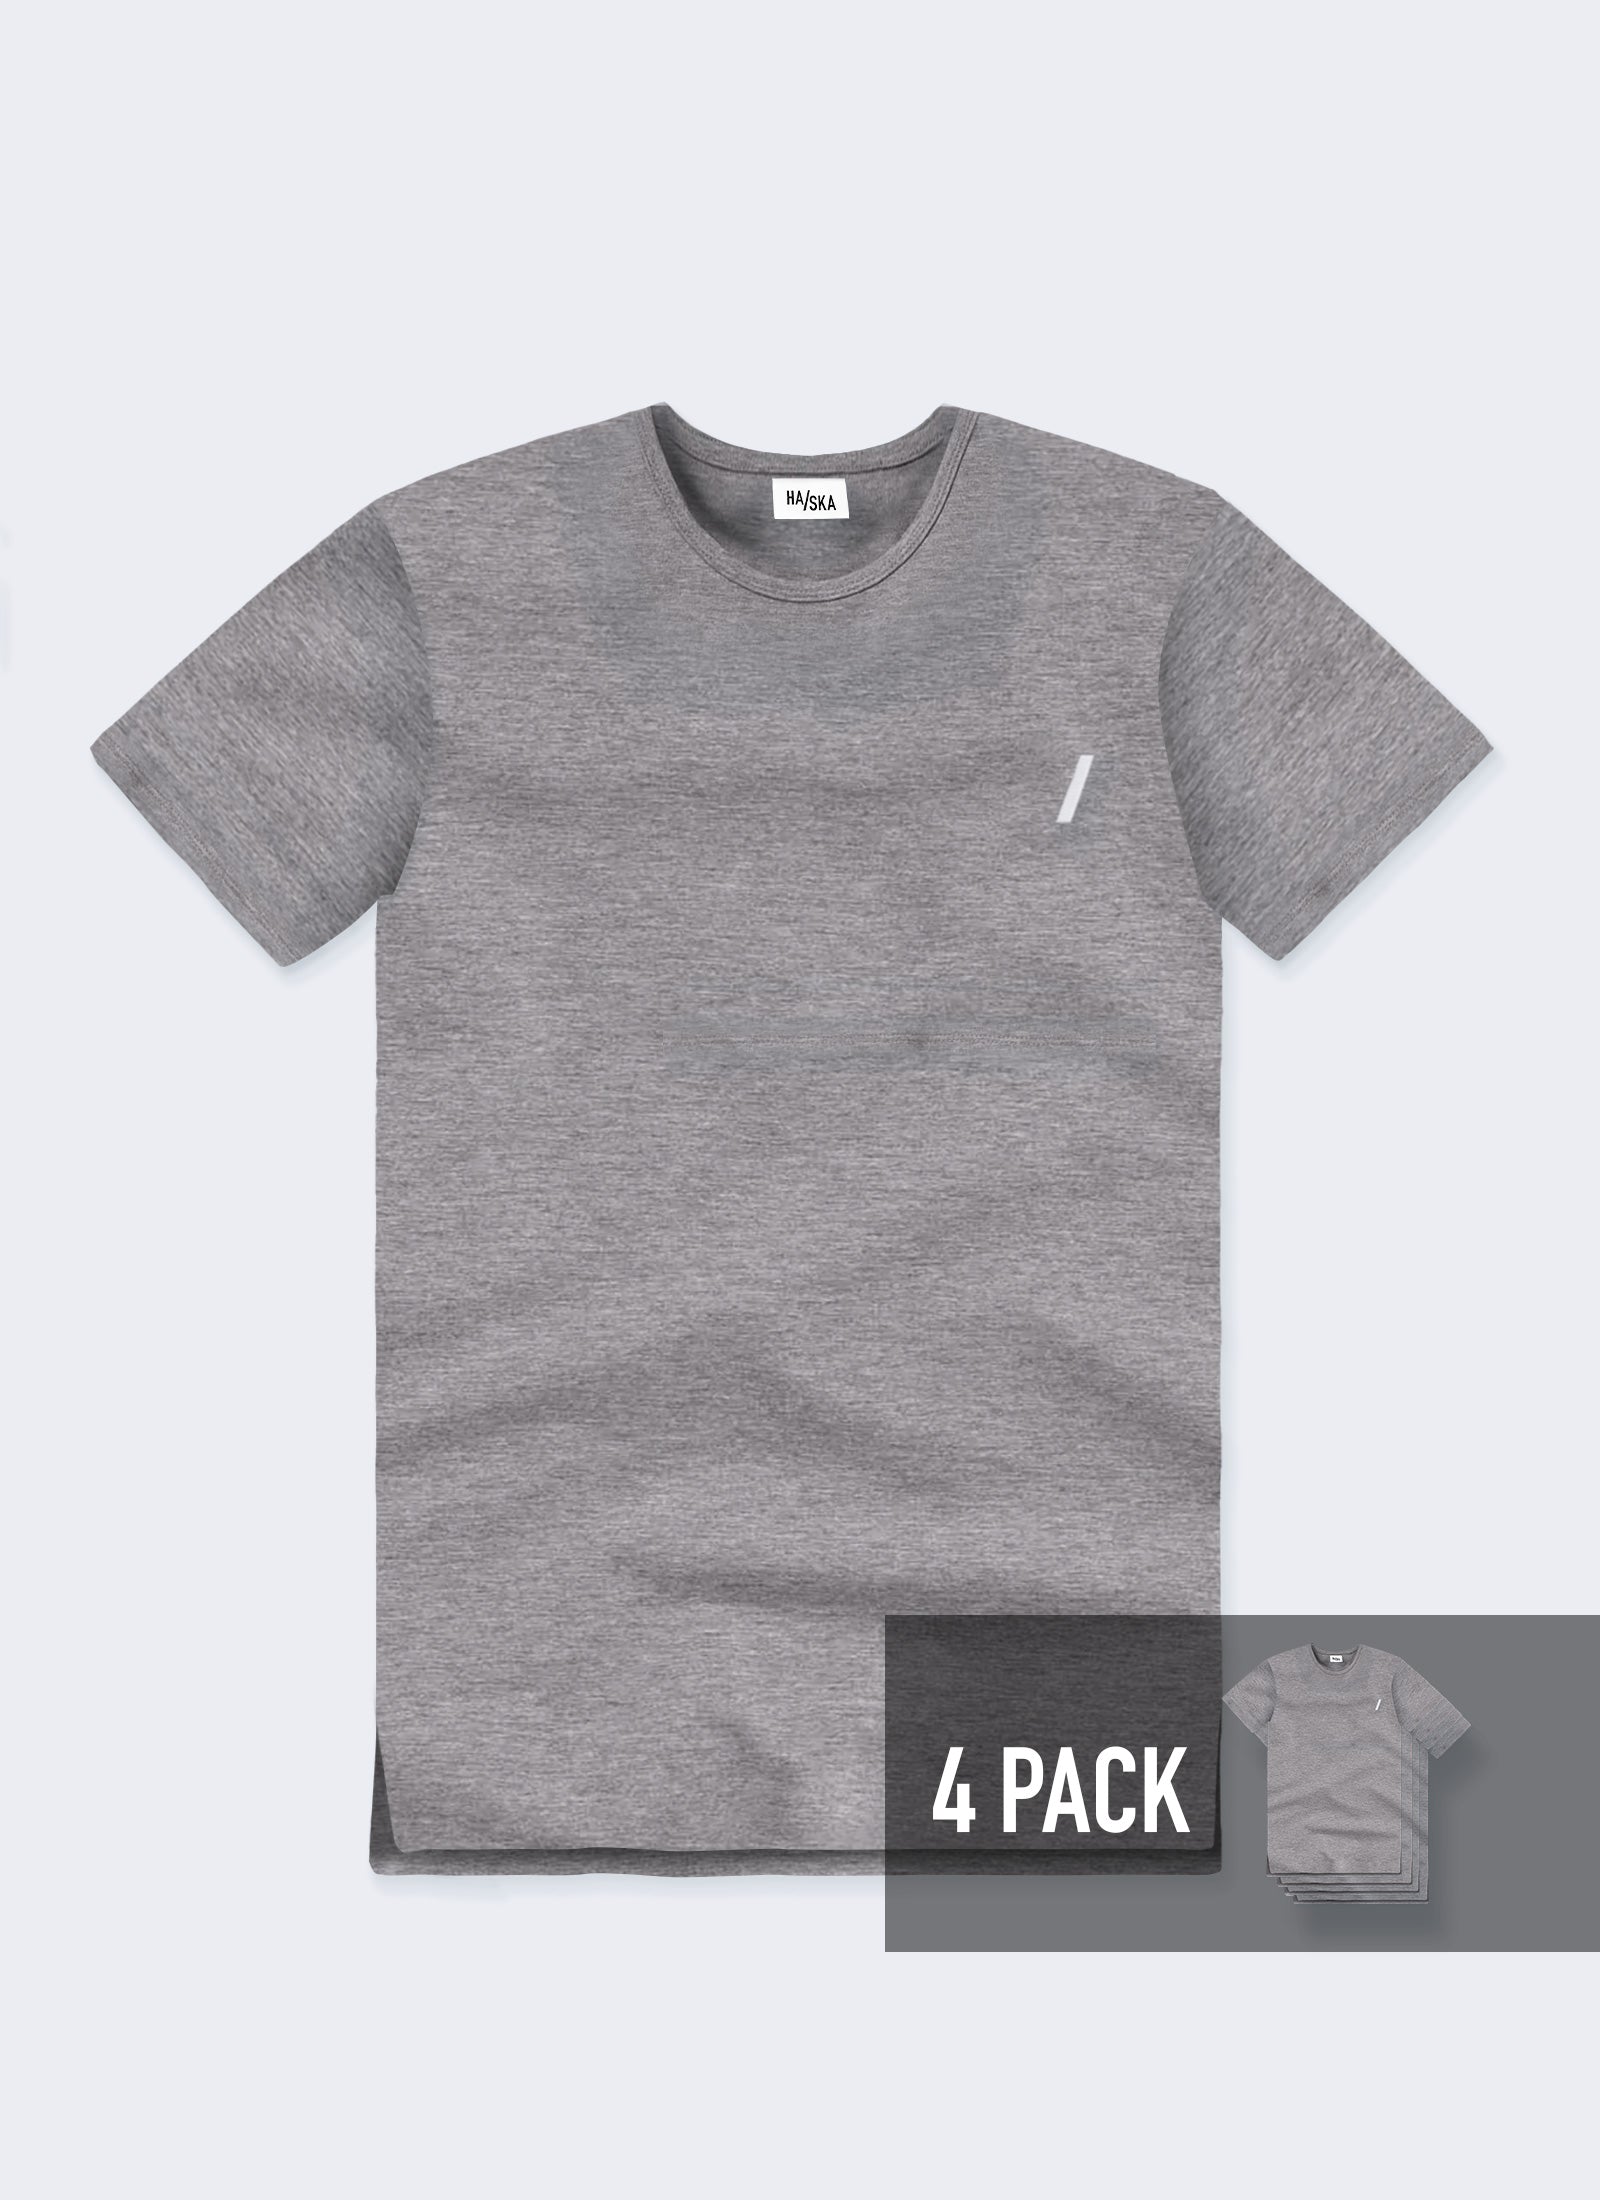 4 PACK / Modern Fit Australian-made Organic T-shirt